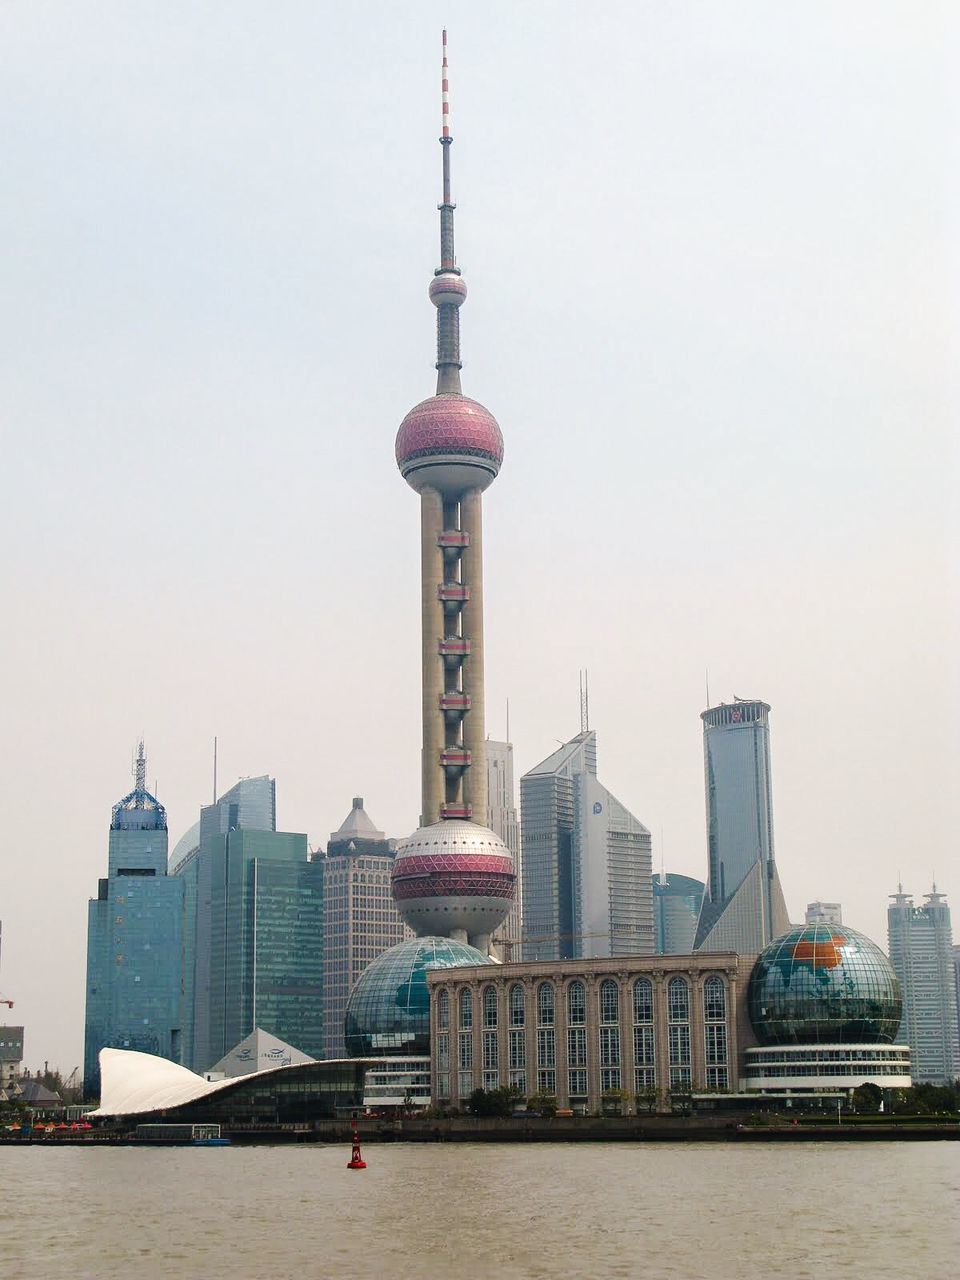 Oriental peal tower in shanghai